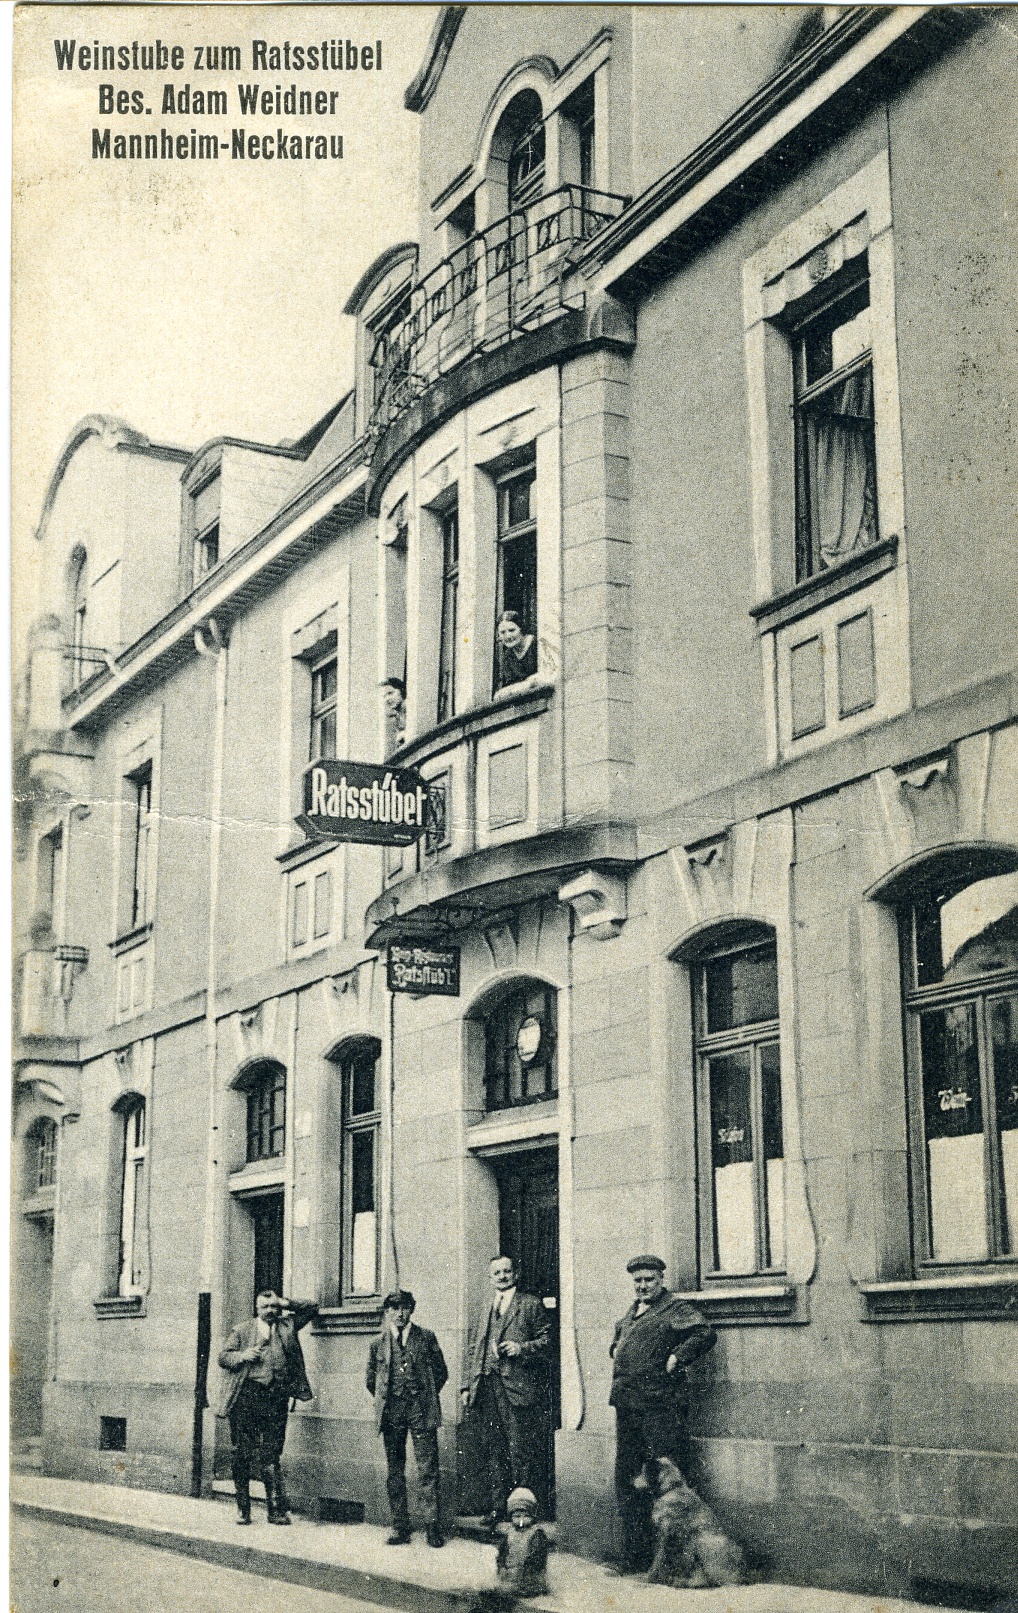 Postkarte Mannheim-Neckarau 1928 (Historisches Museum der Pfalz, Speyer CC BY)